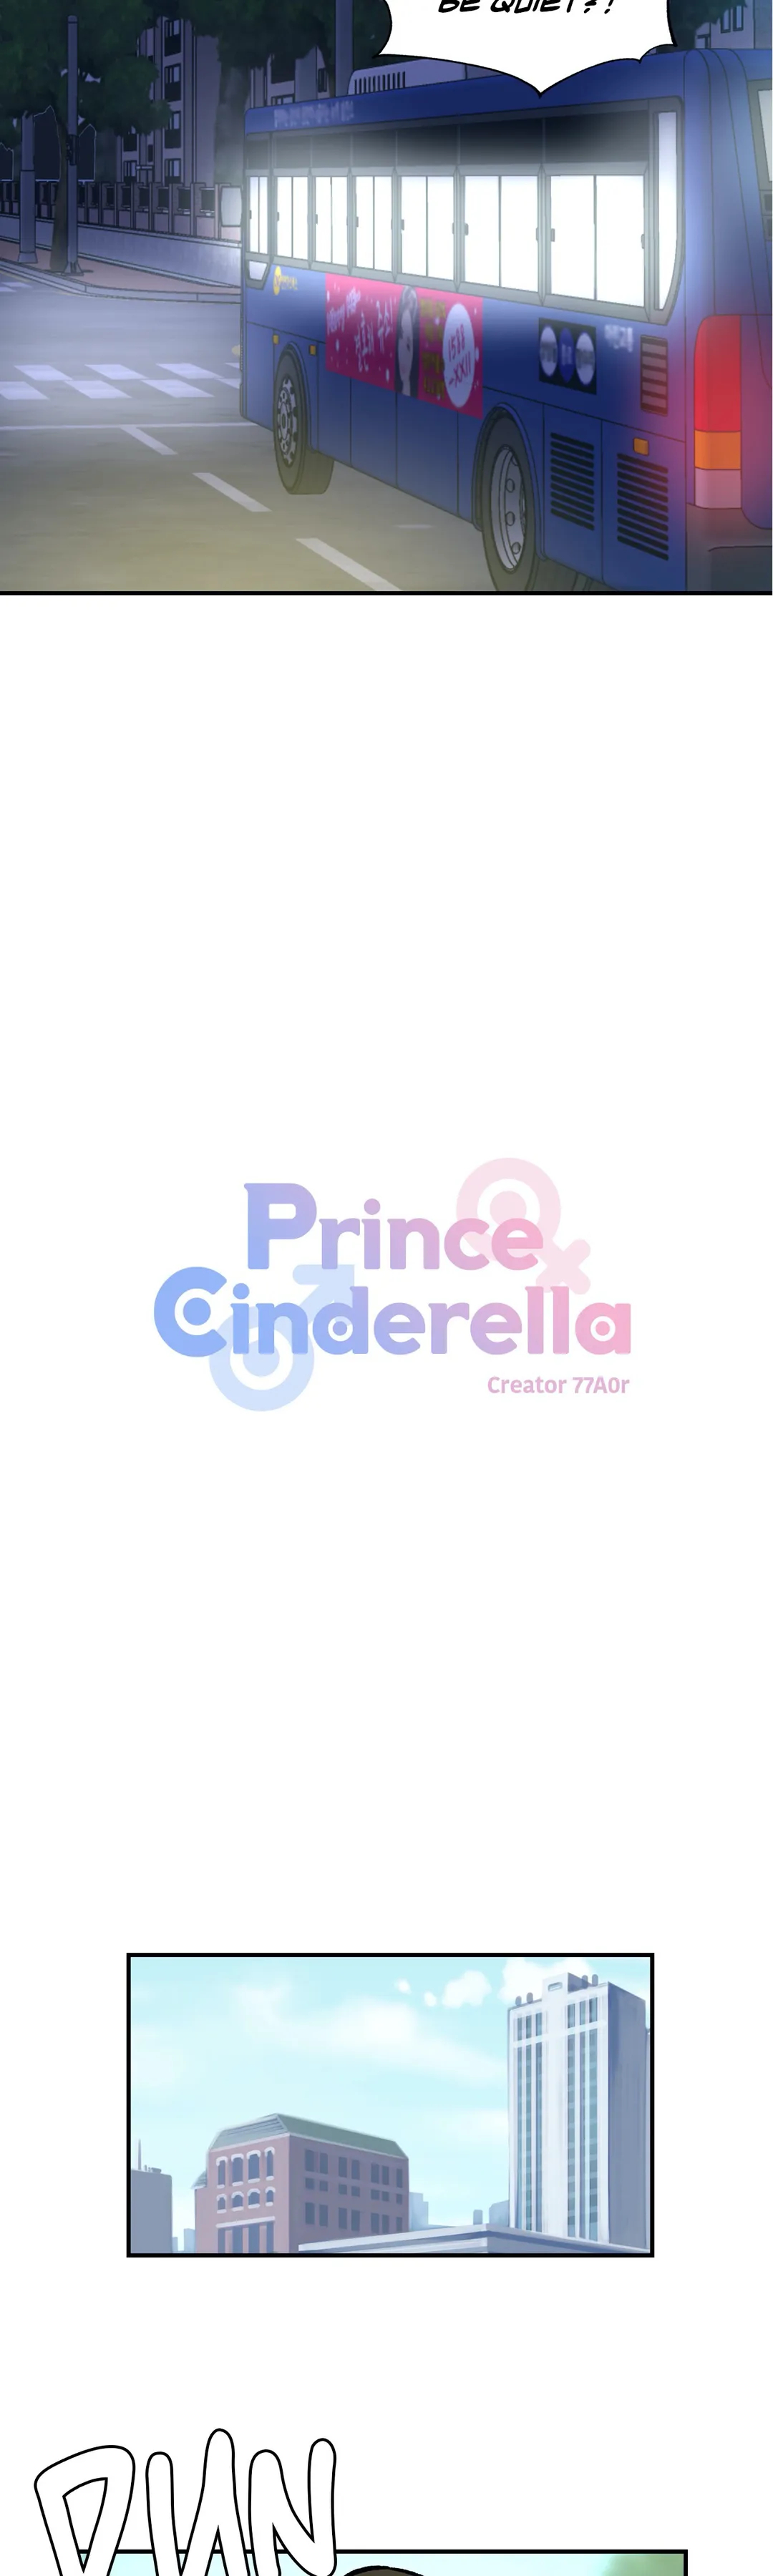 Prince Cinderella - Page 2